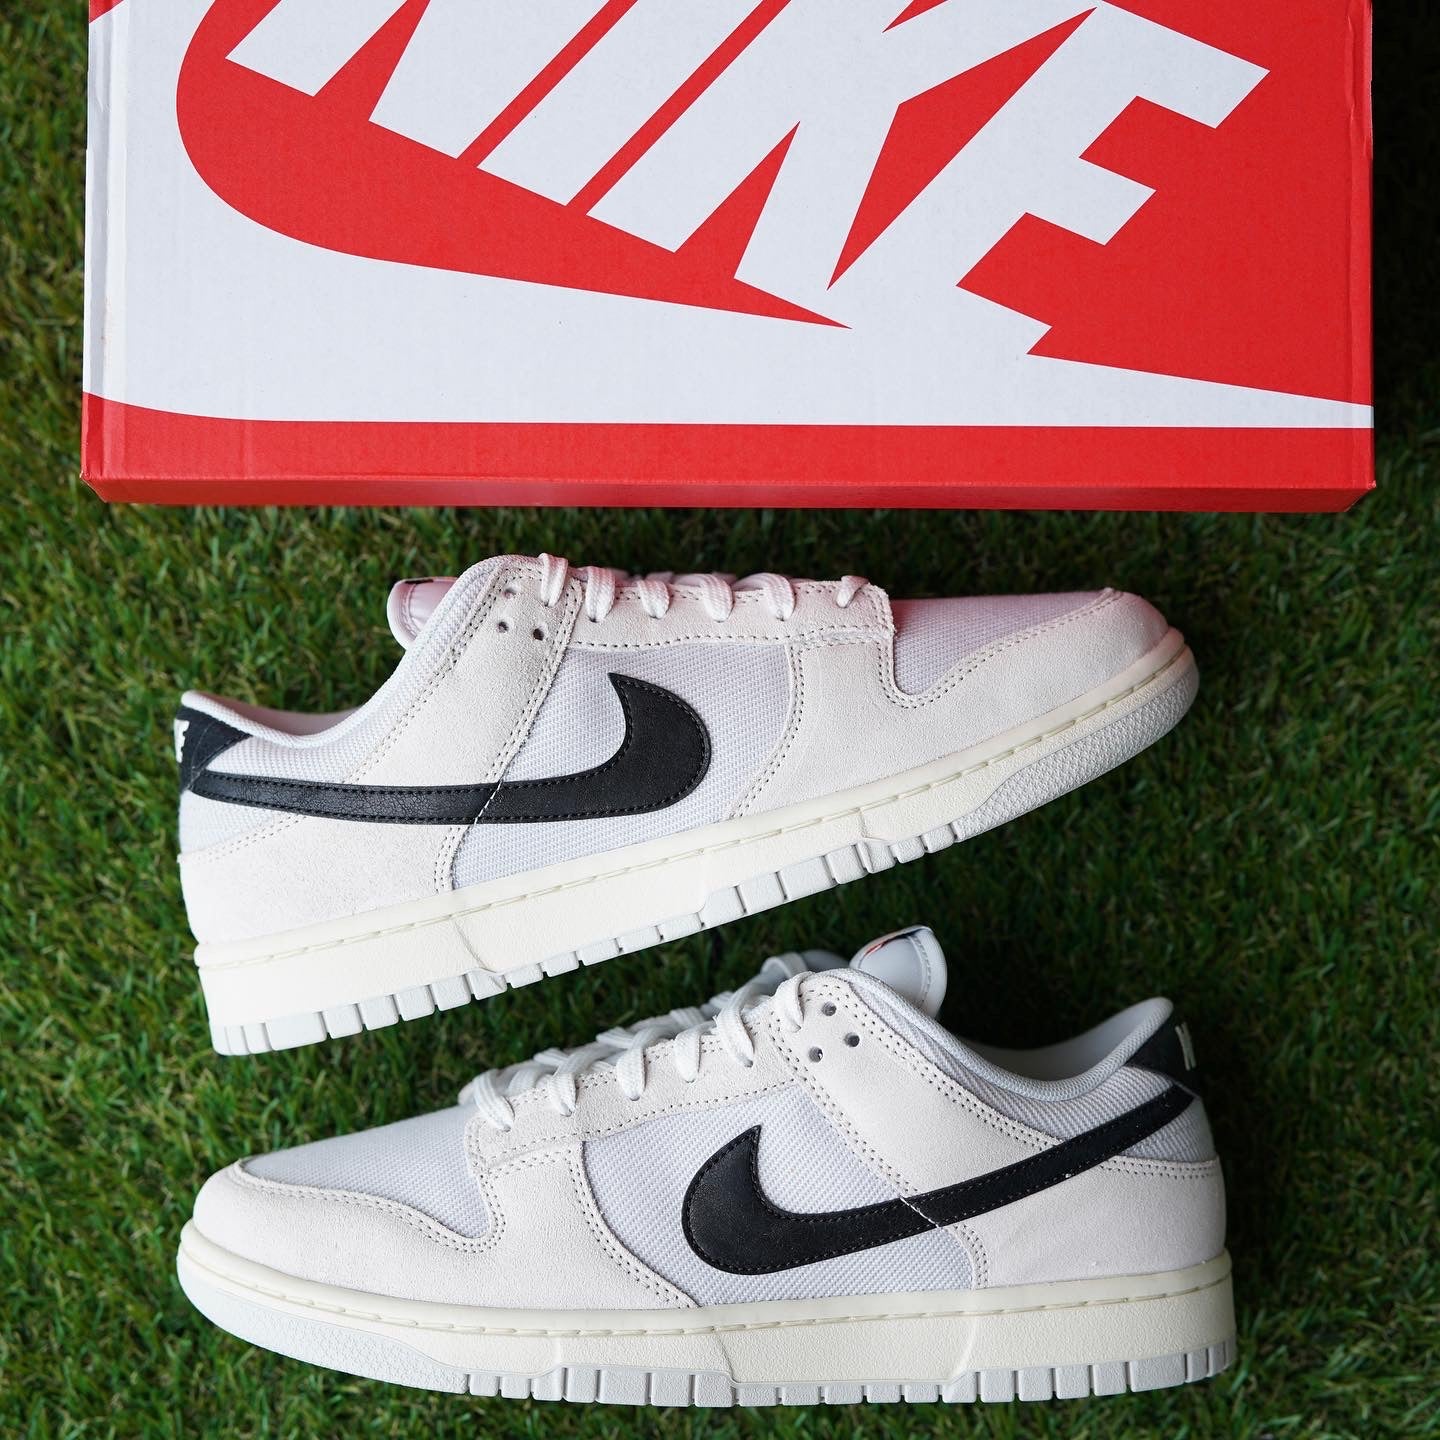 Nike Dunk Low “Certified Fresh”